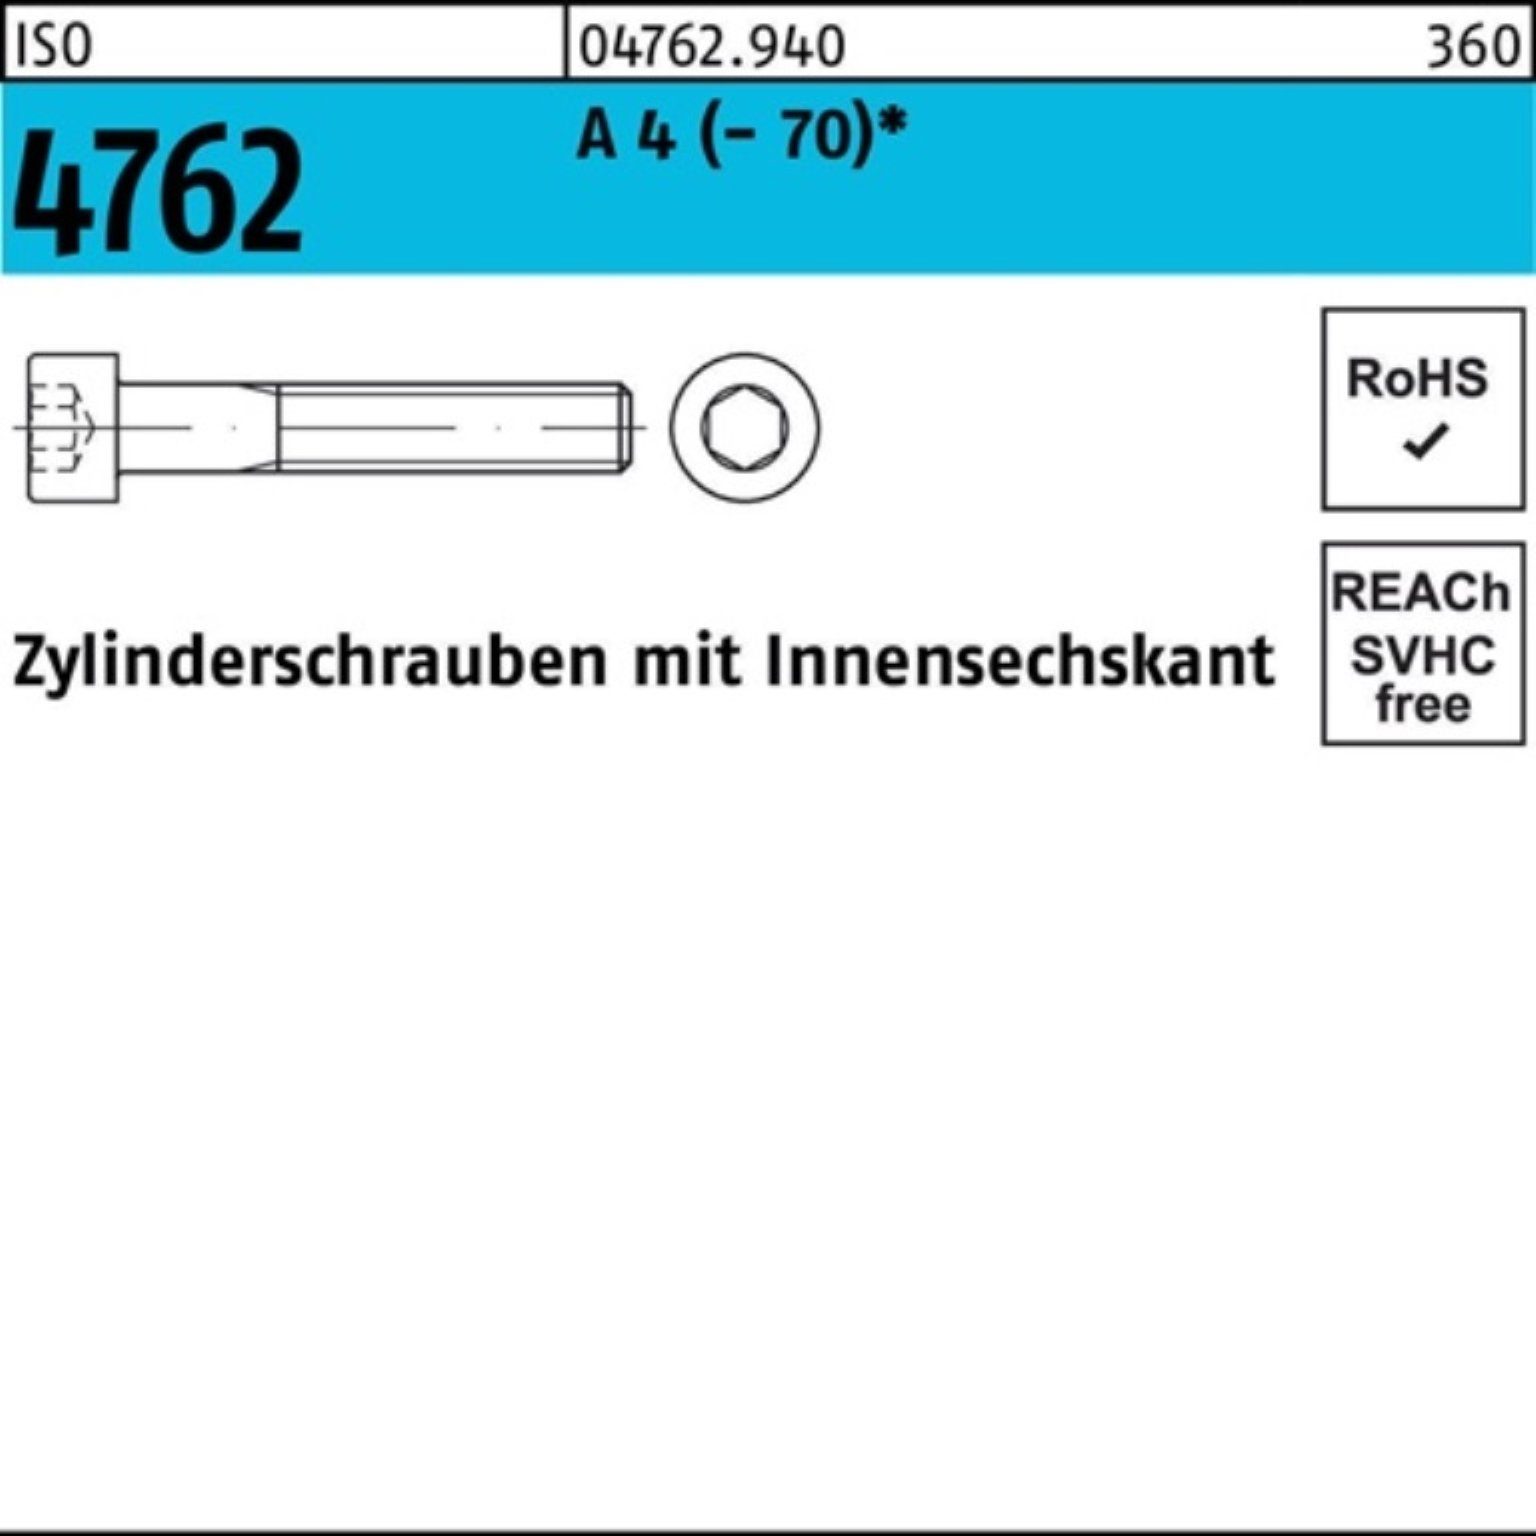 Zylinderschraube 16 4762 4 Zylinderschraube 200er S ISO (70) A Innen-6kt Pack Reyher M8x 200